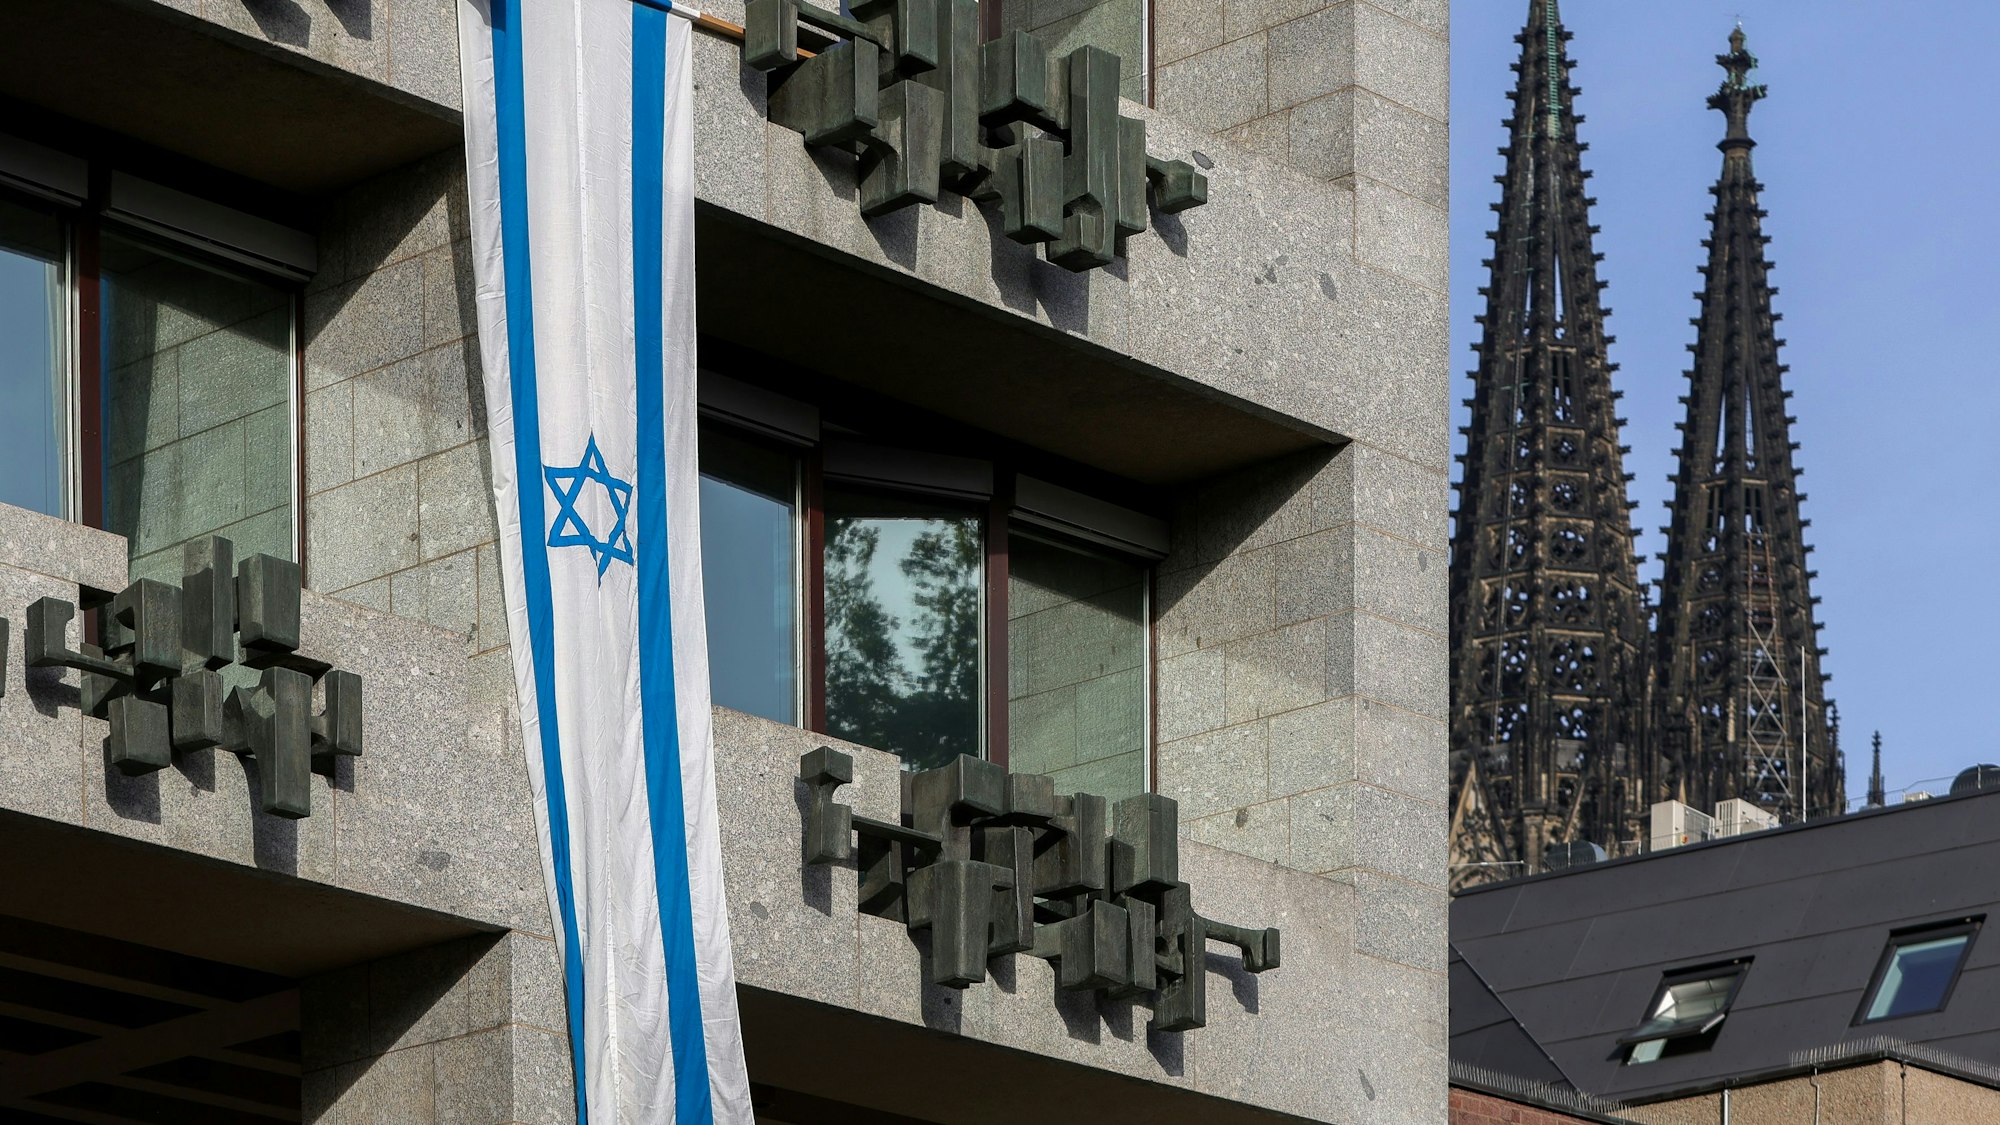 Zu sehen ist eine israelische Flagge an der Fassade des Kölner Rathauses.